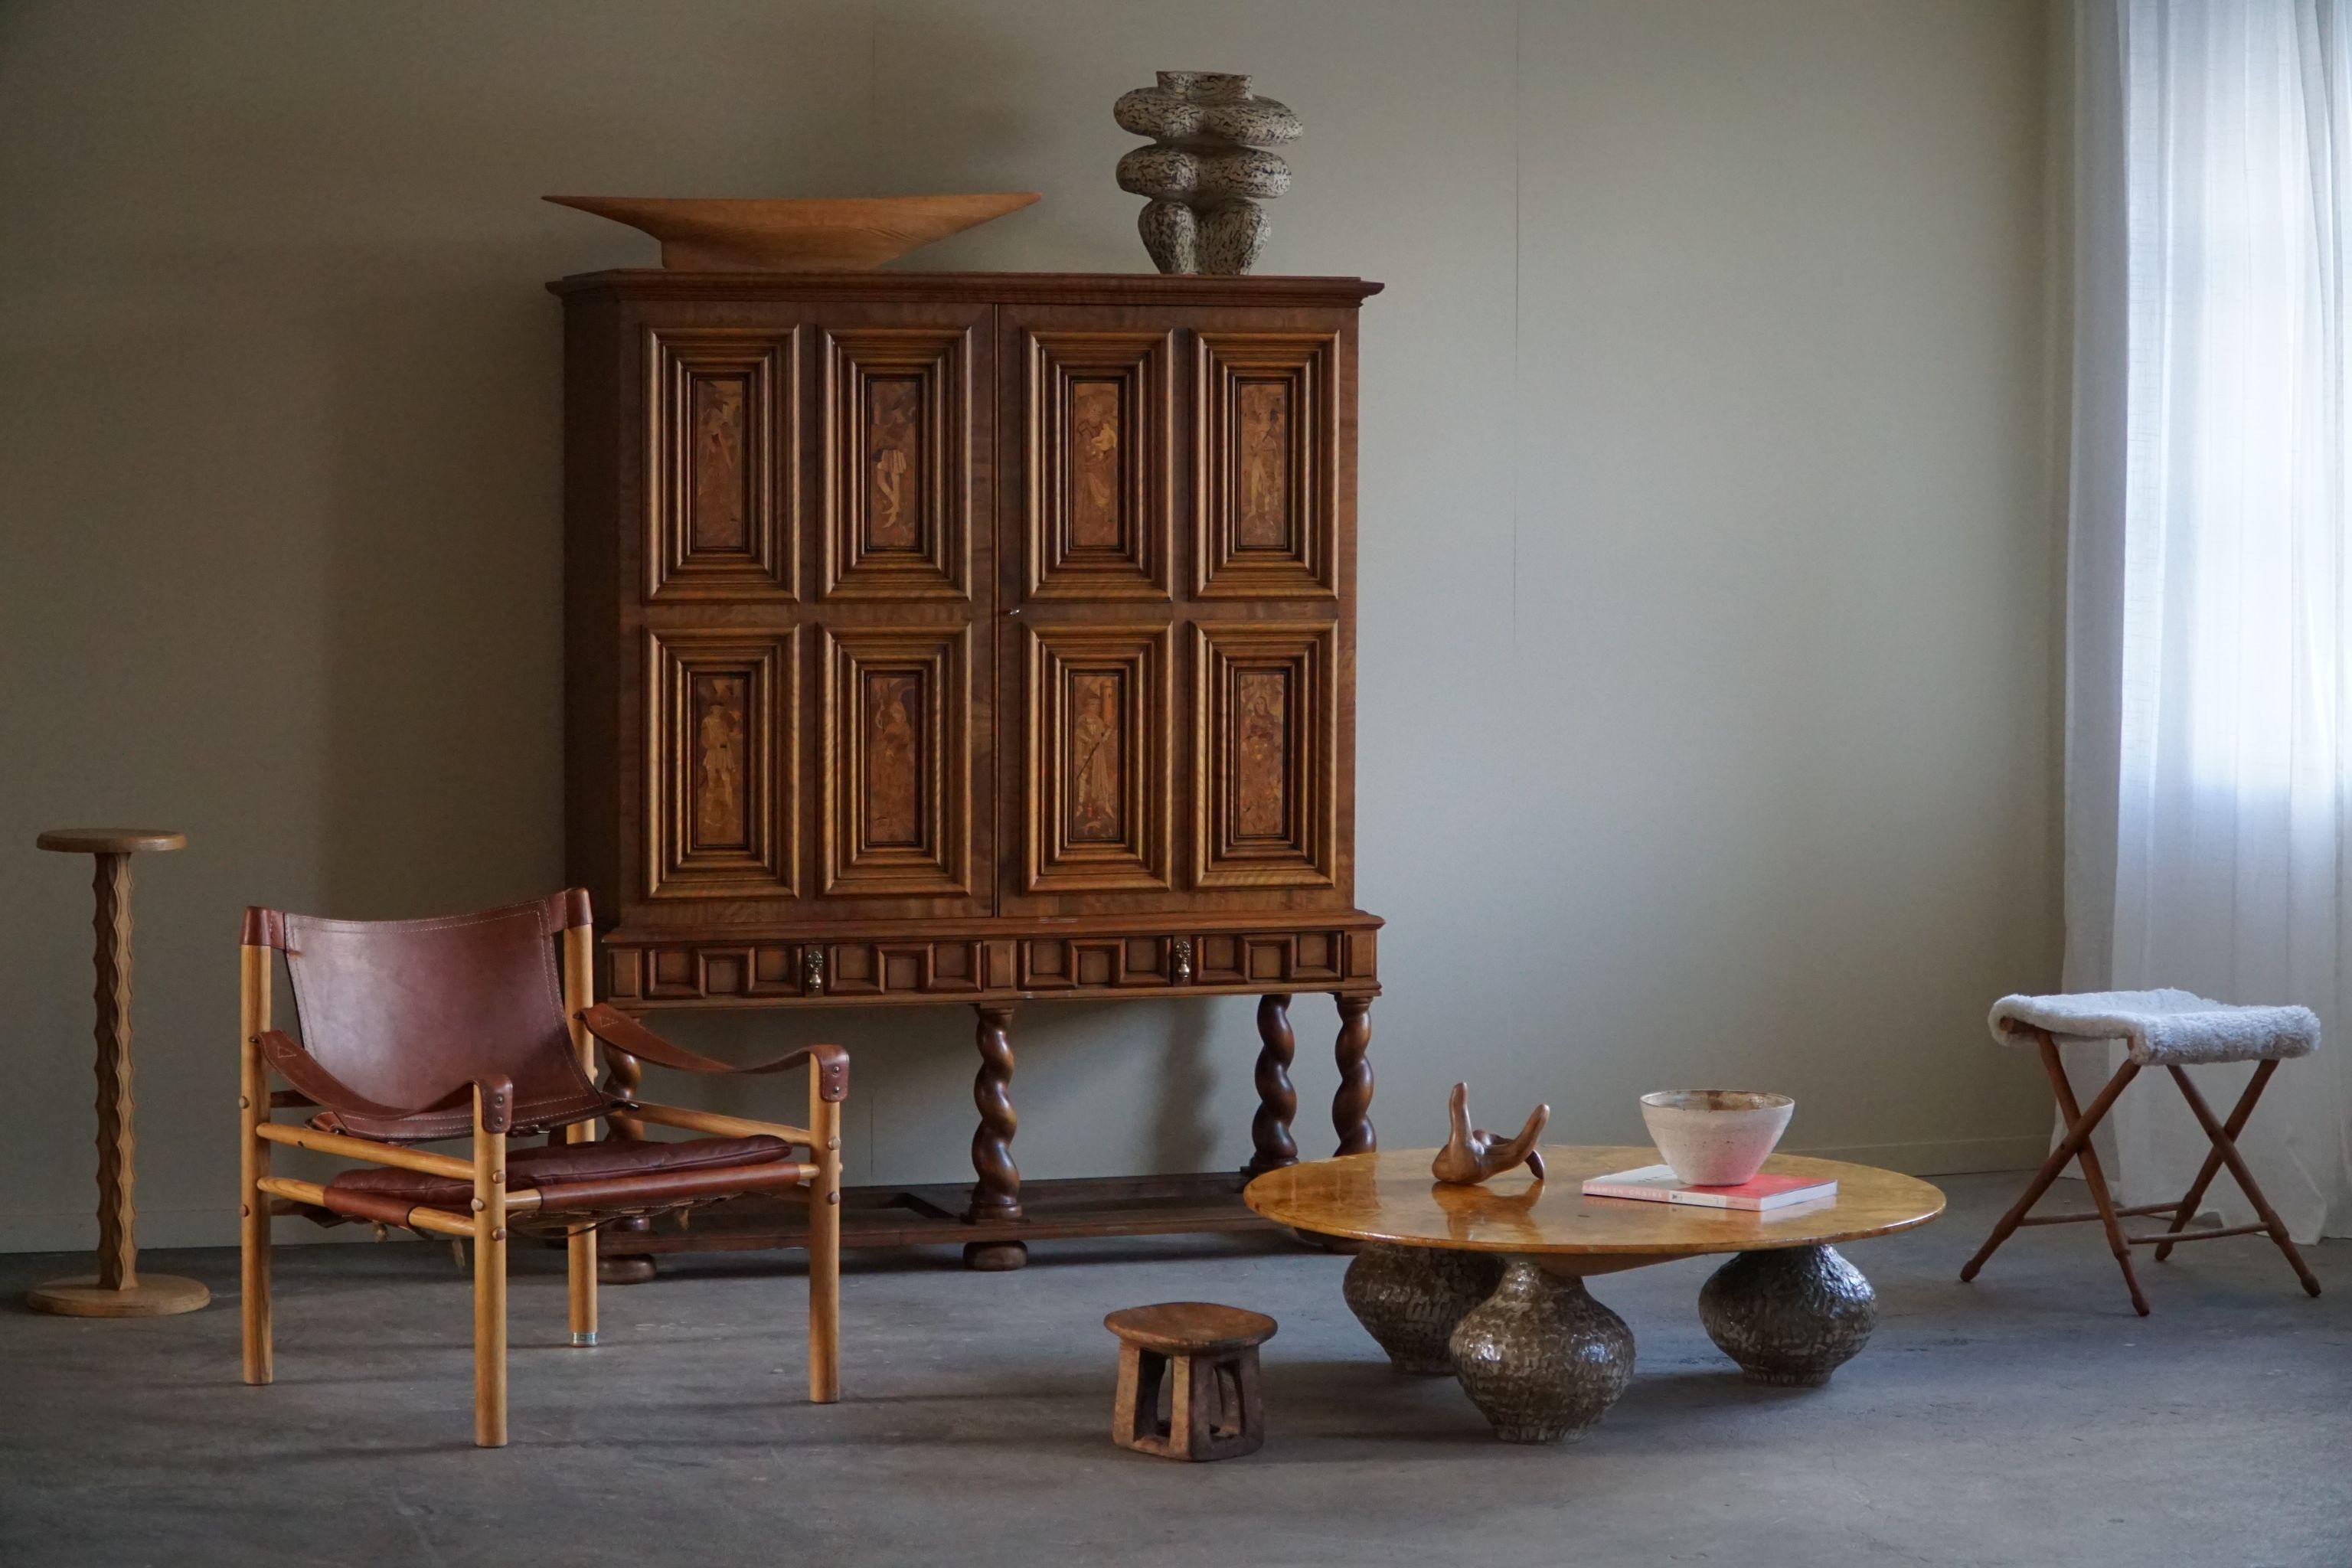 Ce fascinant meuble sculptural en bouleau et pieds torsadés, fabriqué dans les années 1930 par un ébéniste suédois expérimenté, est une incarnation frappante de la fusion entre la précision de l'Art déco et la grâce organique du mouvement Swedish